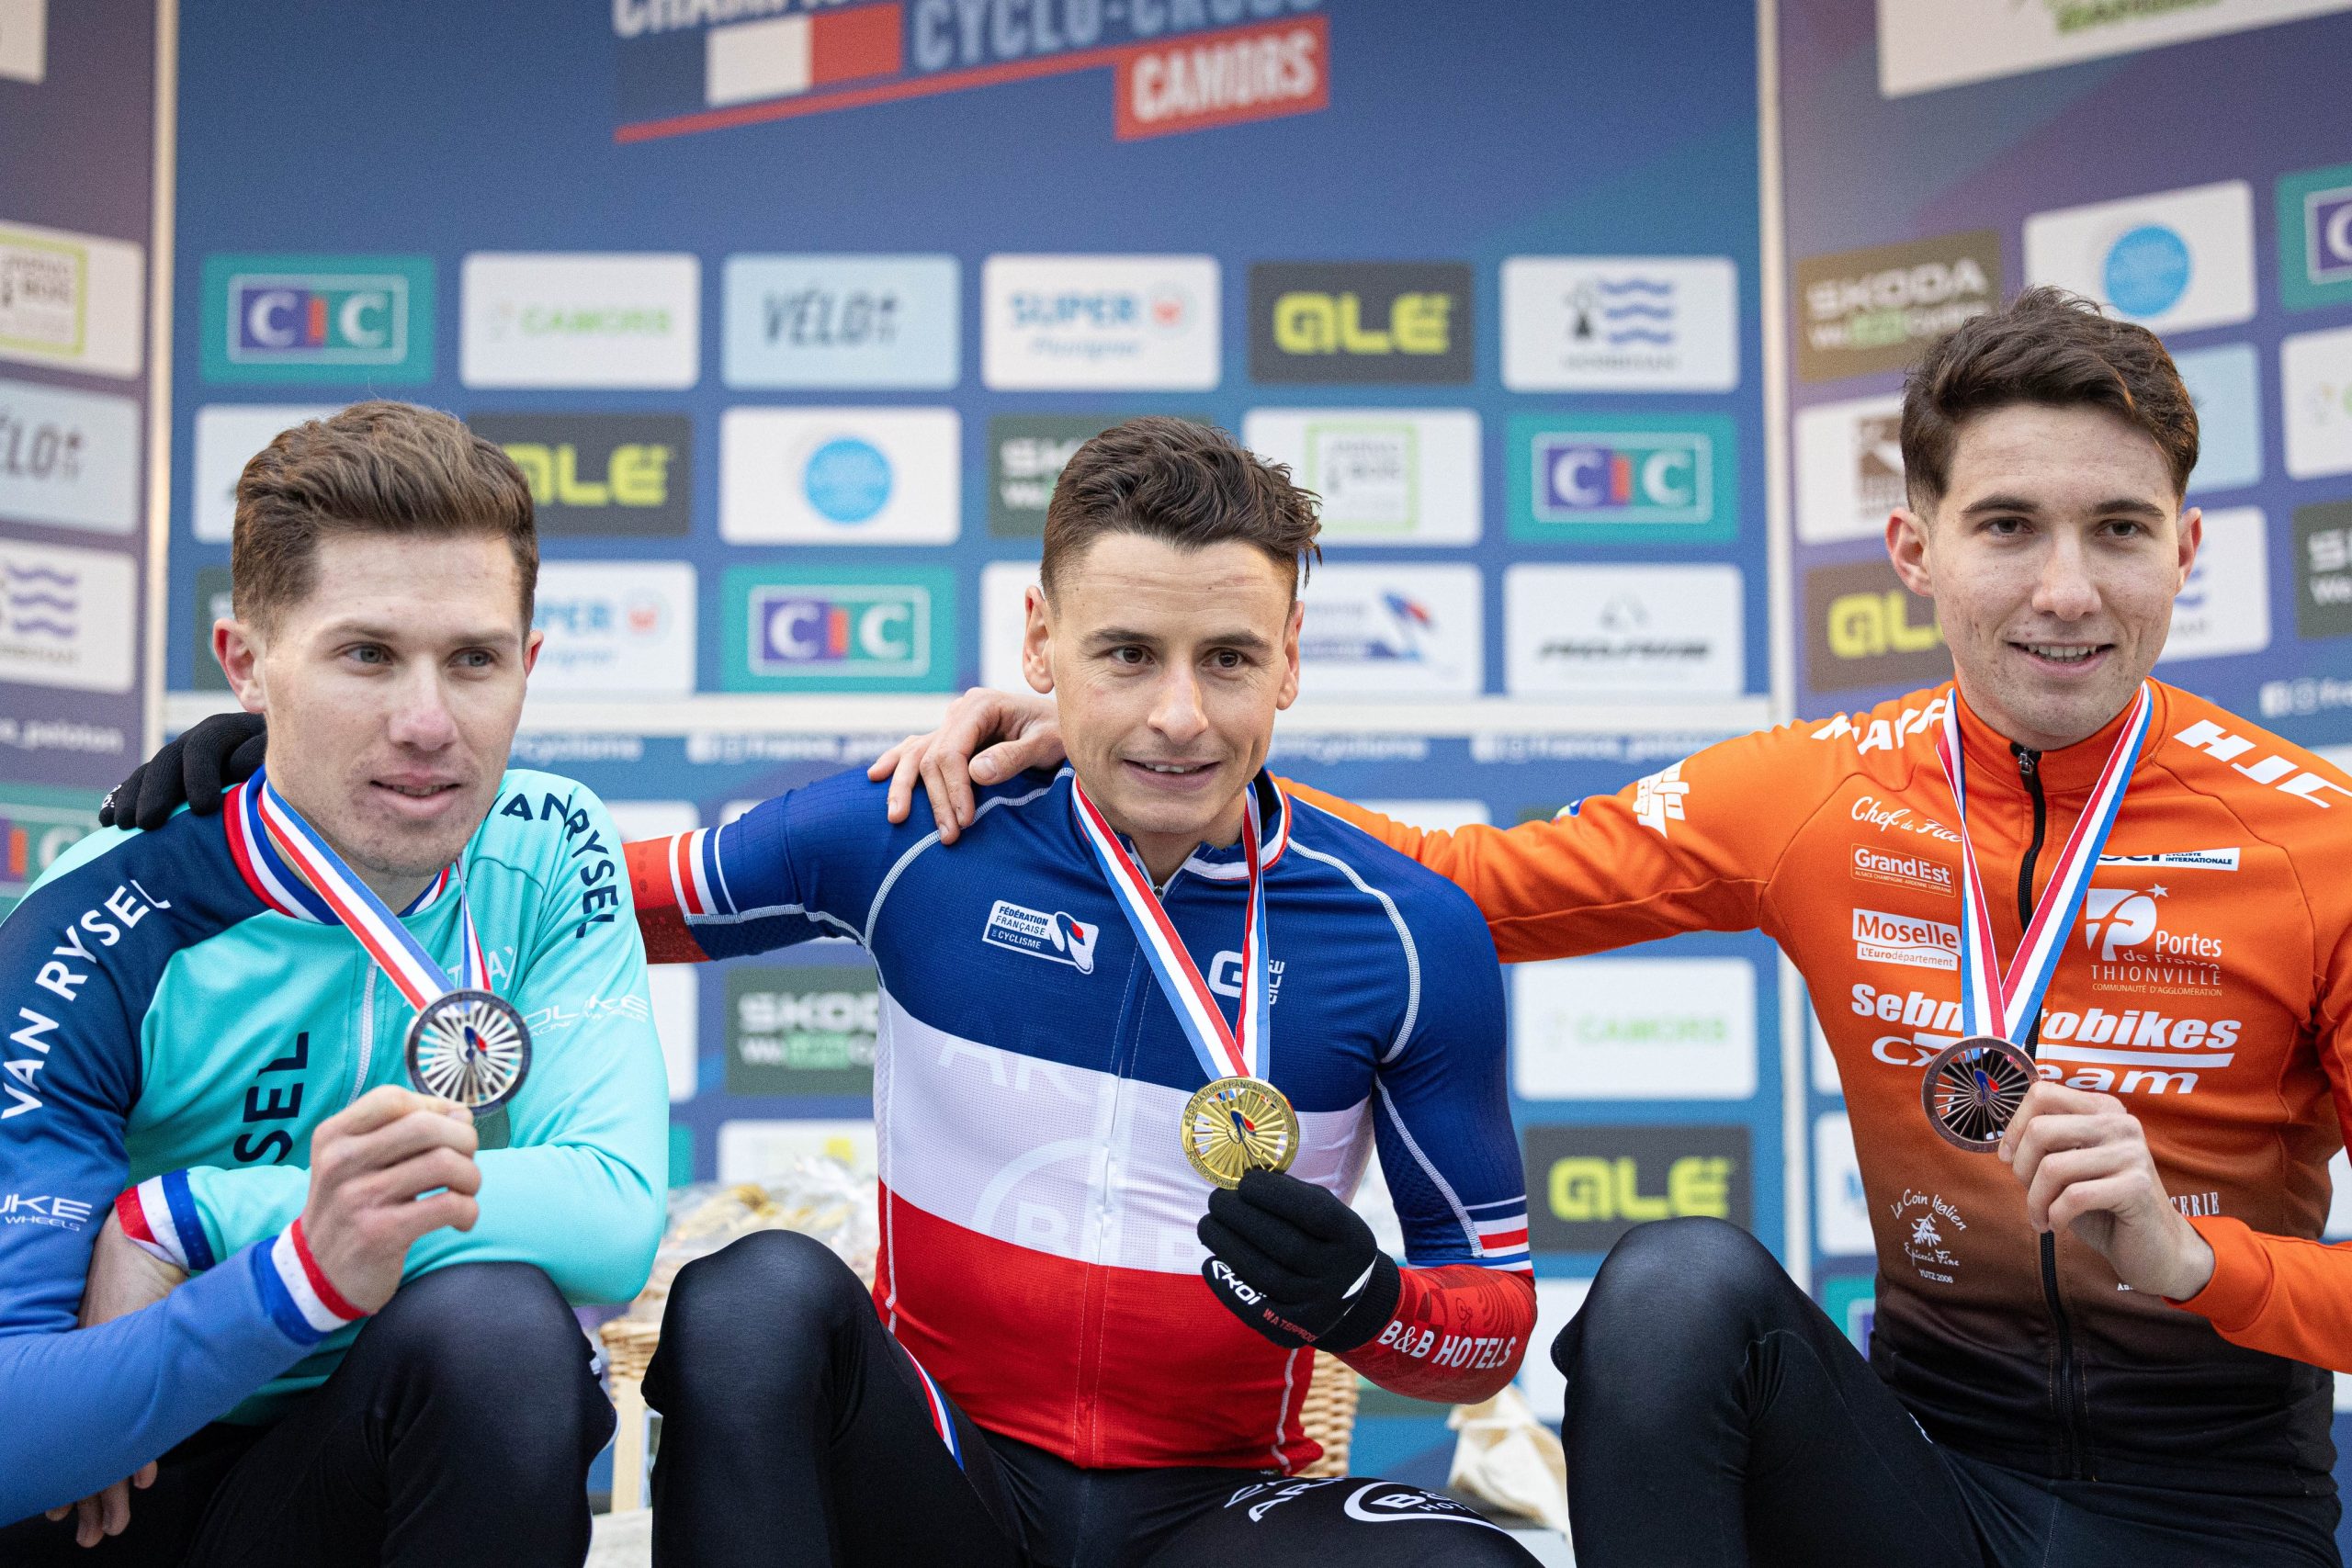 Pódio do Ciclocrosse dos Elites Masculinos franceses com Joshua Dubau, Clément Venturini e Théo Thomas (Foto: FFCyclisme)